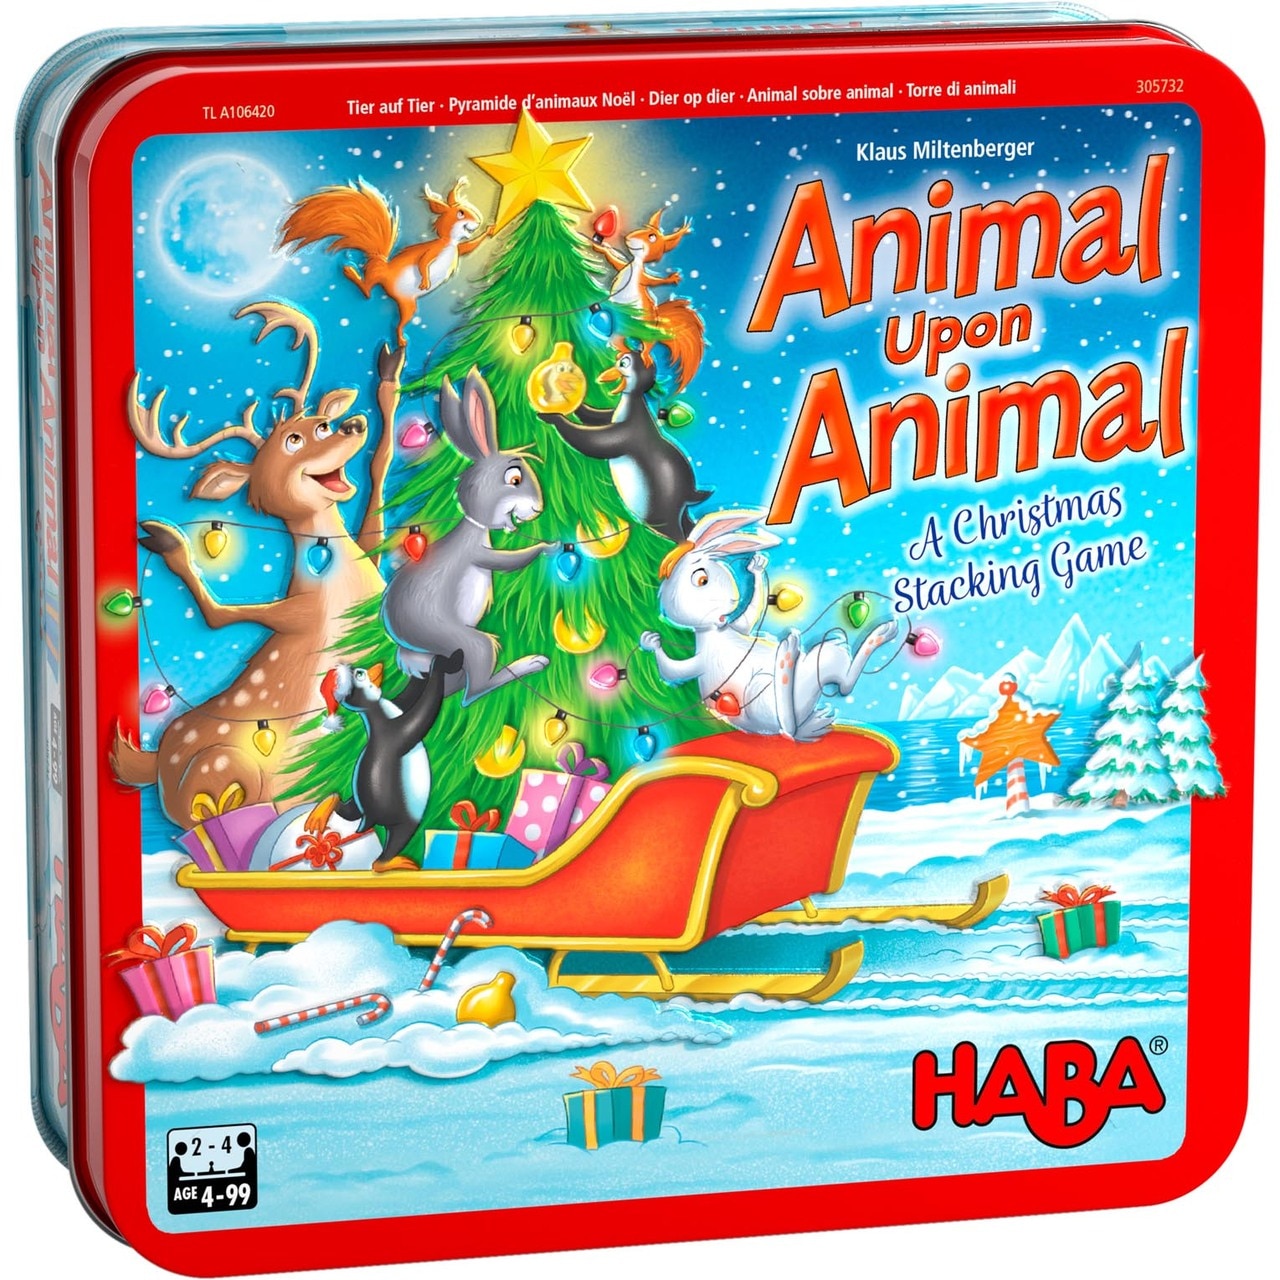 Animal Upon Animal: A Christmas Stacking Game box